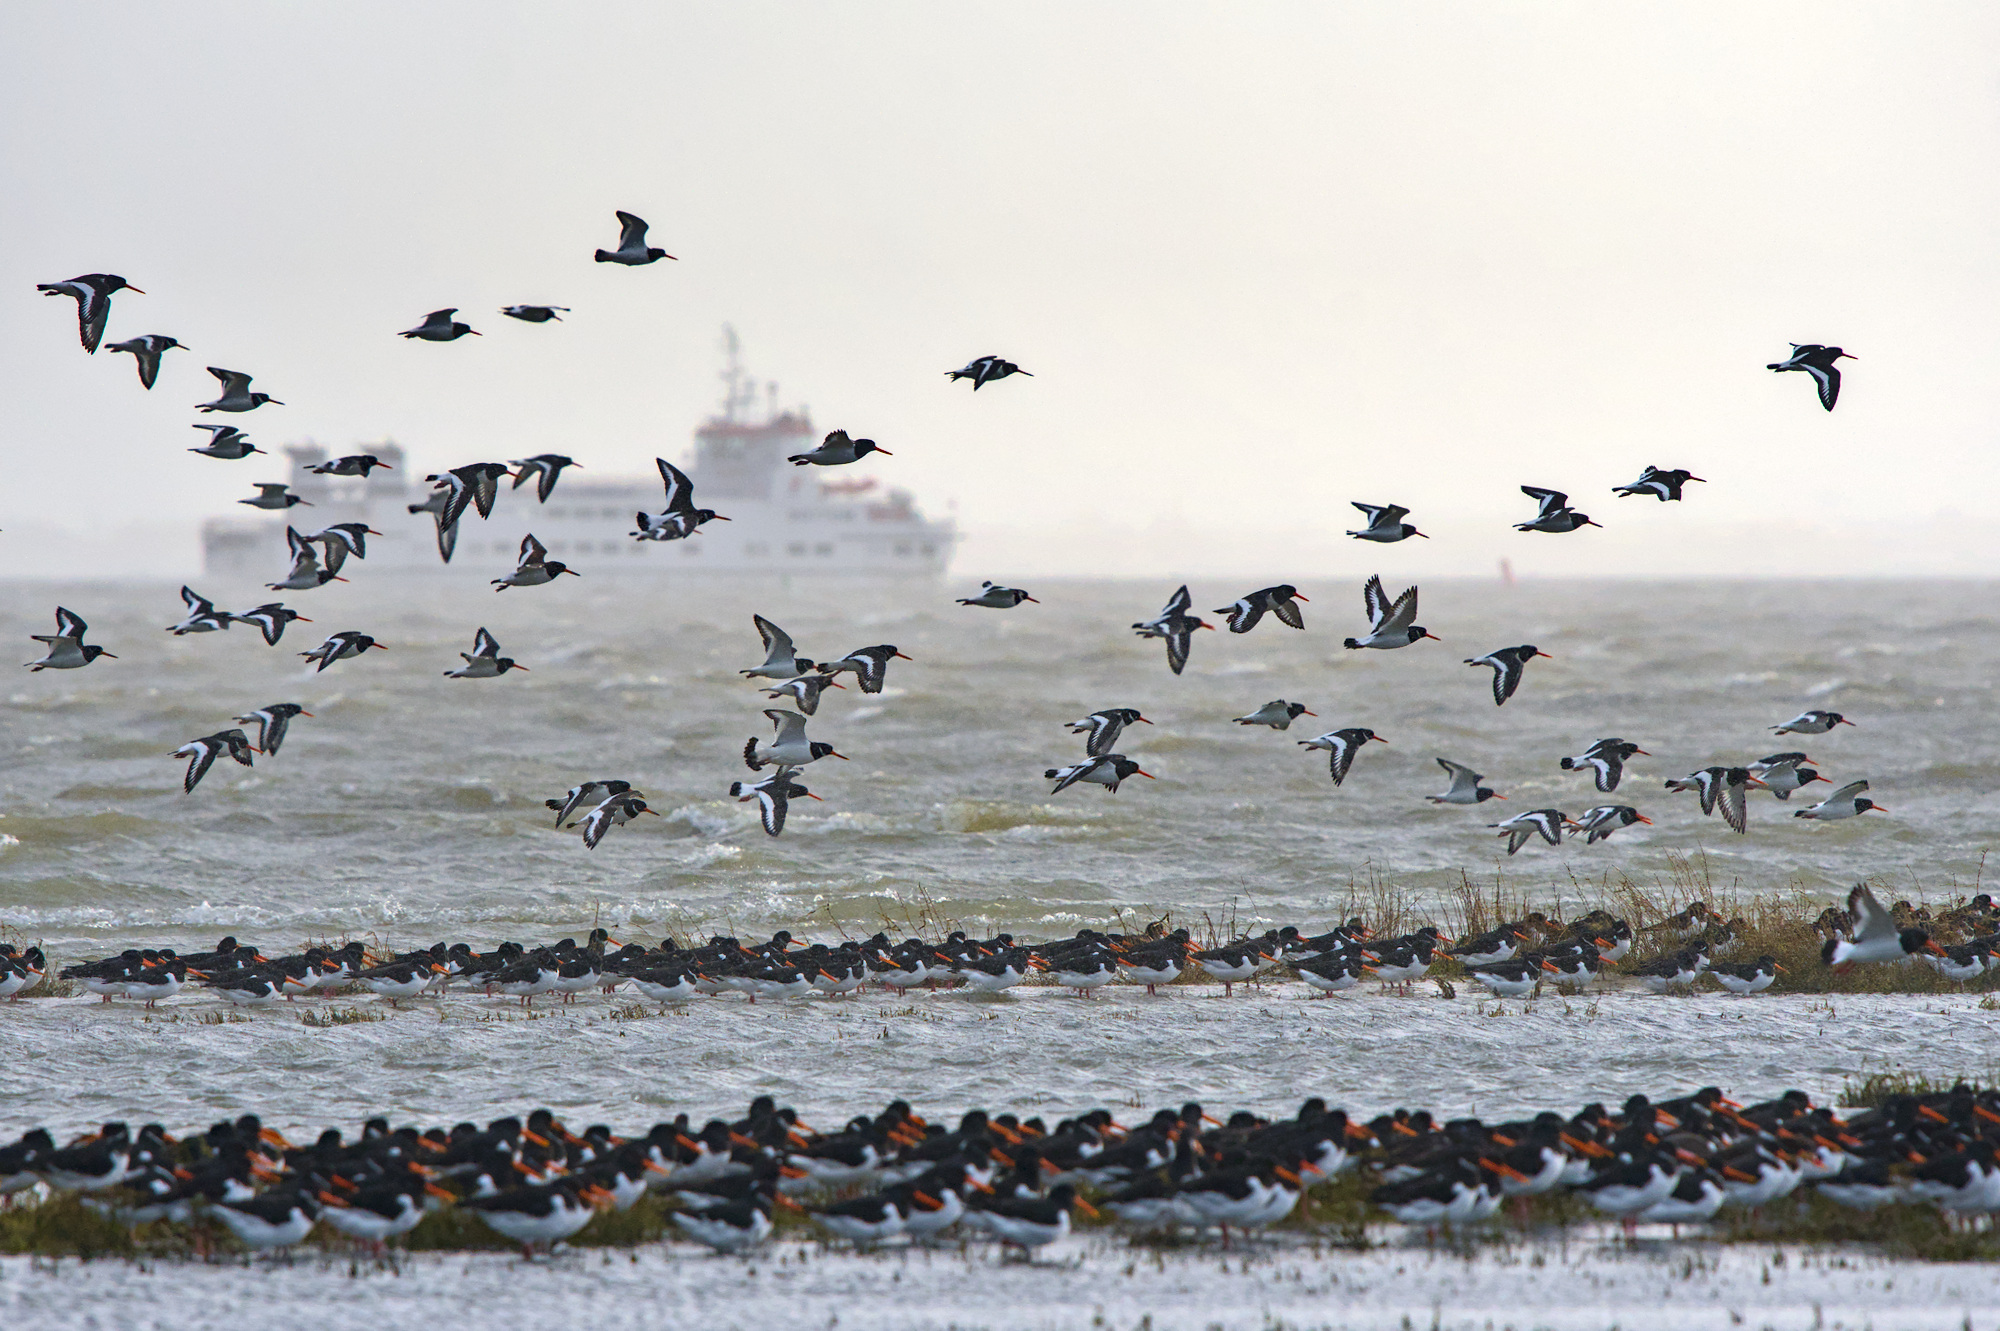 Een grote groep scholeksters zit op een klein randje land midden in zee. Enkele vogels hangen erboven. In de achtergrond is de veerboot vaag zichtbaar in de mist.